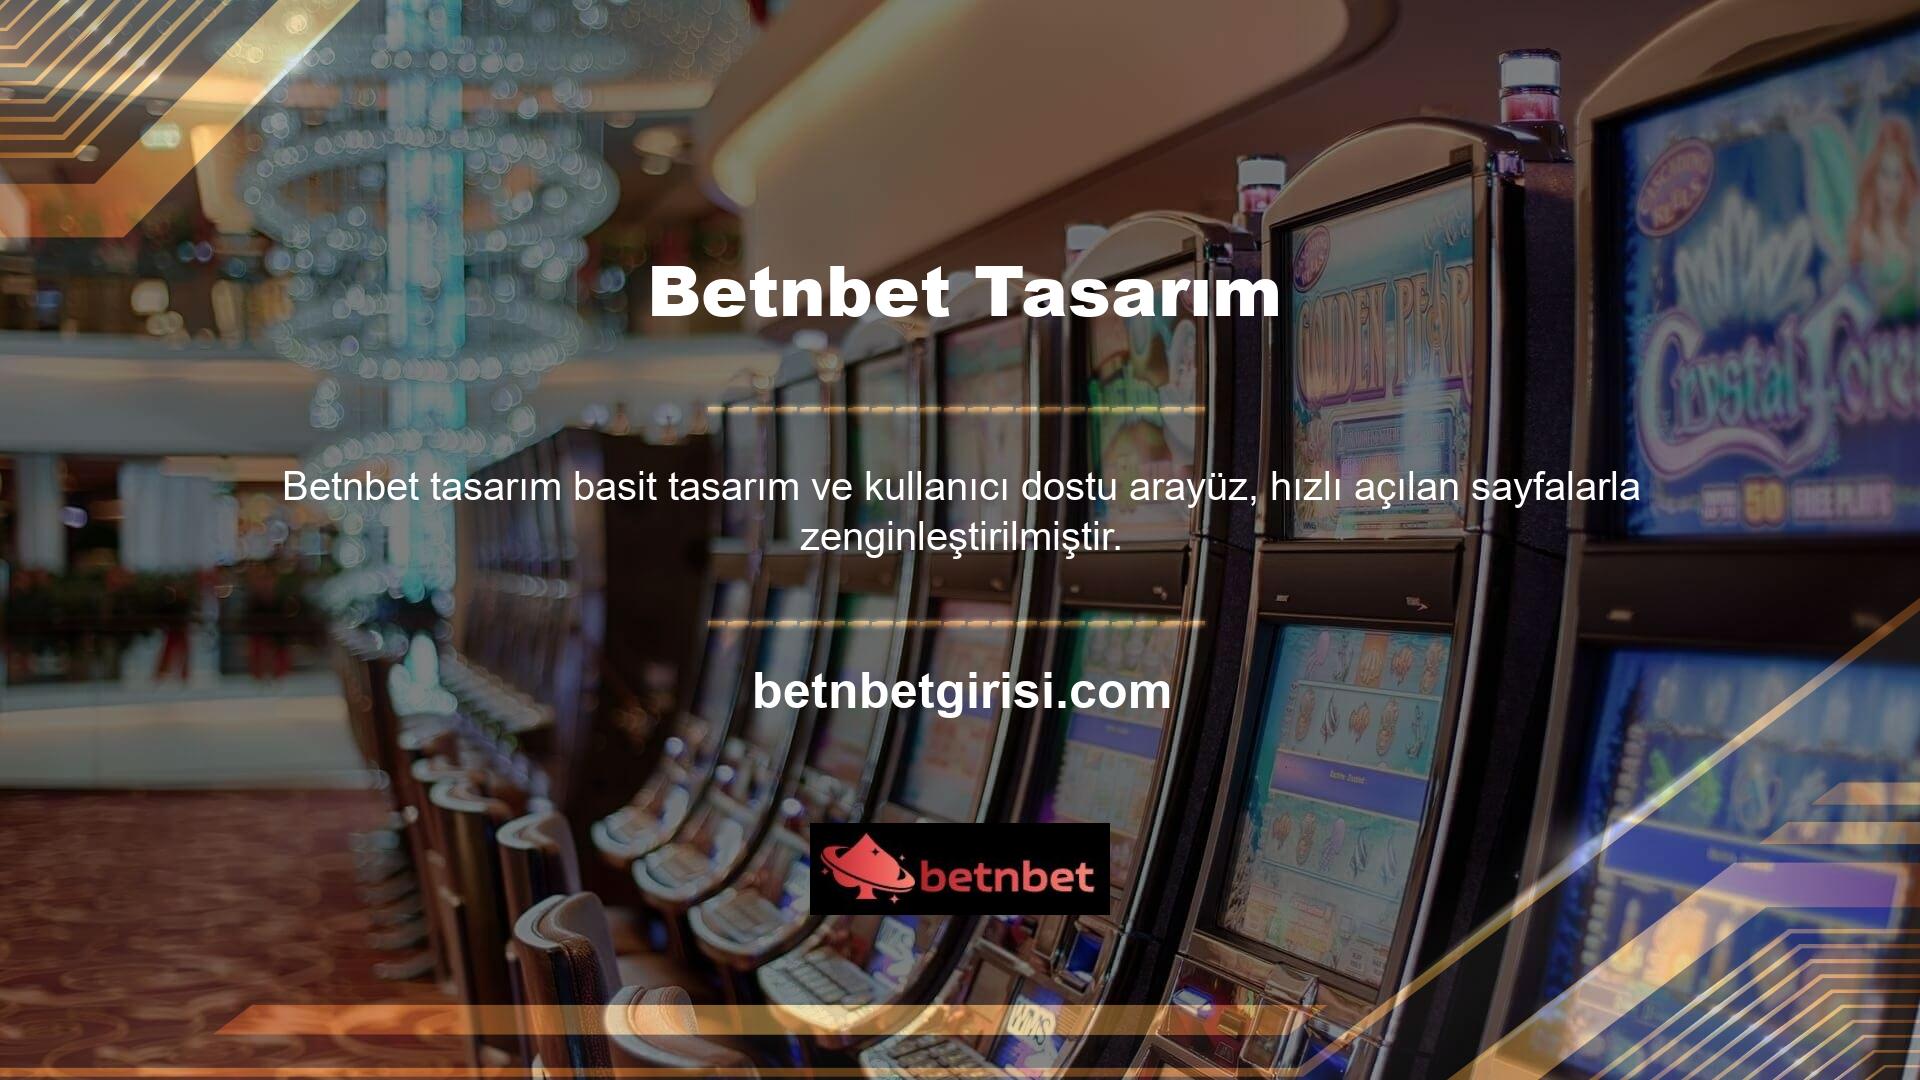 Betnbet canlı casino oyunlarının mobil entegrasyonu özellikle takdir edilmektedir